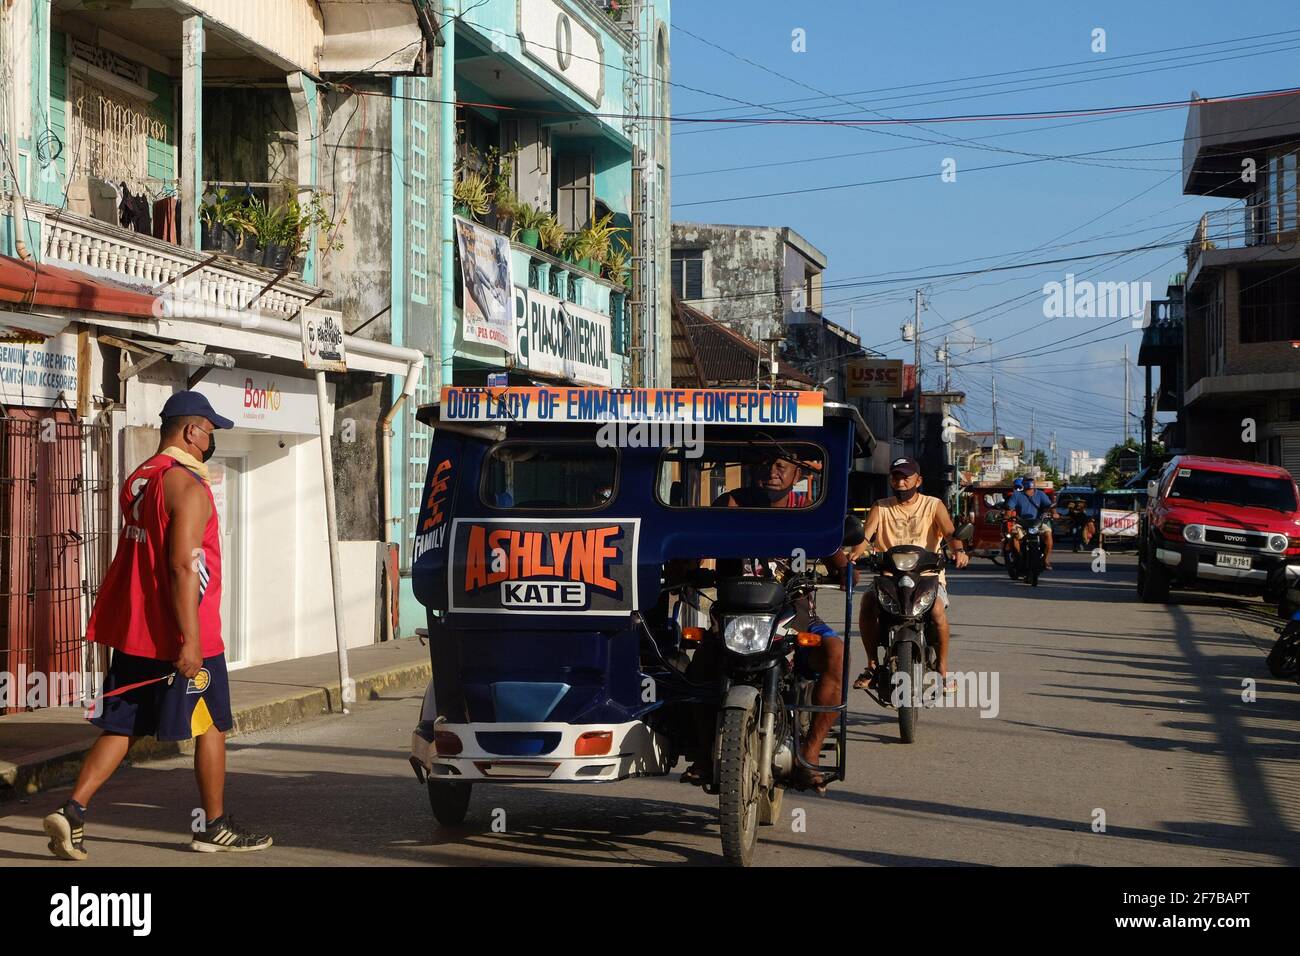 Dieses 3-rädrige Fahrzeug ist der Haupttransport in Guiuan, Ost-Samar. Guiuan war der Ort des ersten Landfalls während des Super-Taifuns Yolanda am 8. November 2013 und gilt als eine der anfälligen Provinzen für die Auswirkungen des Klimawandels. Philippinen. Stockfoto